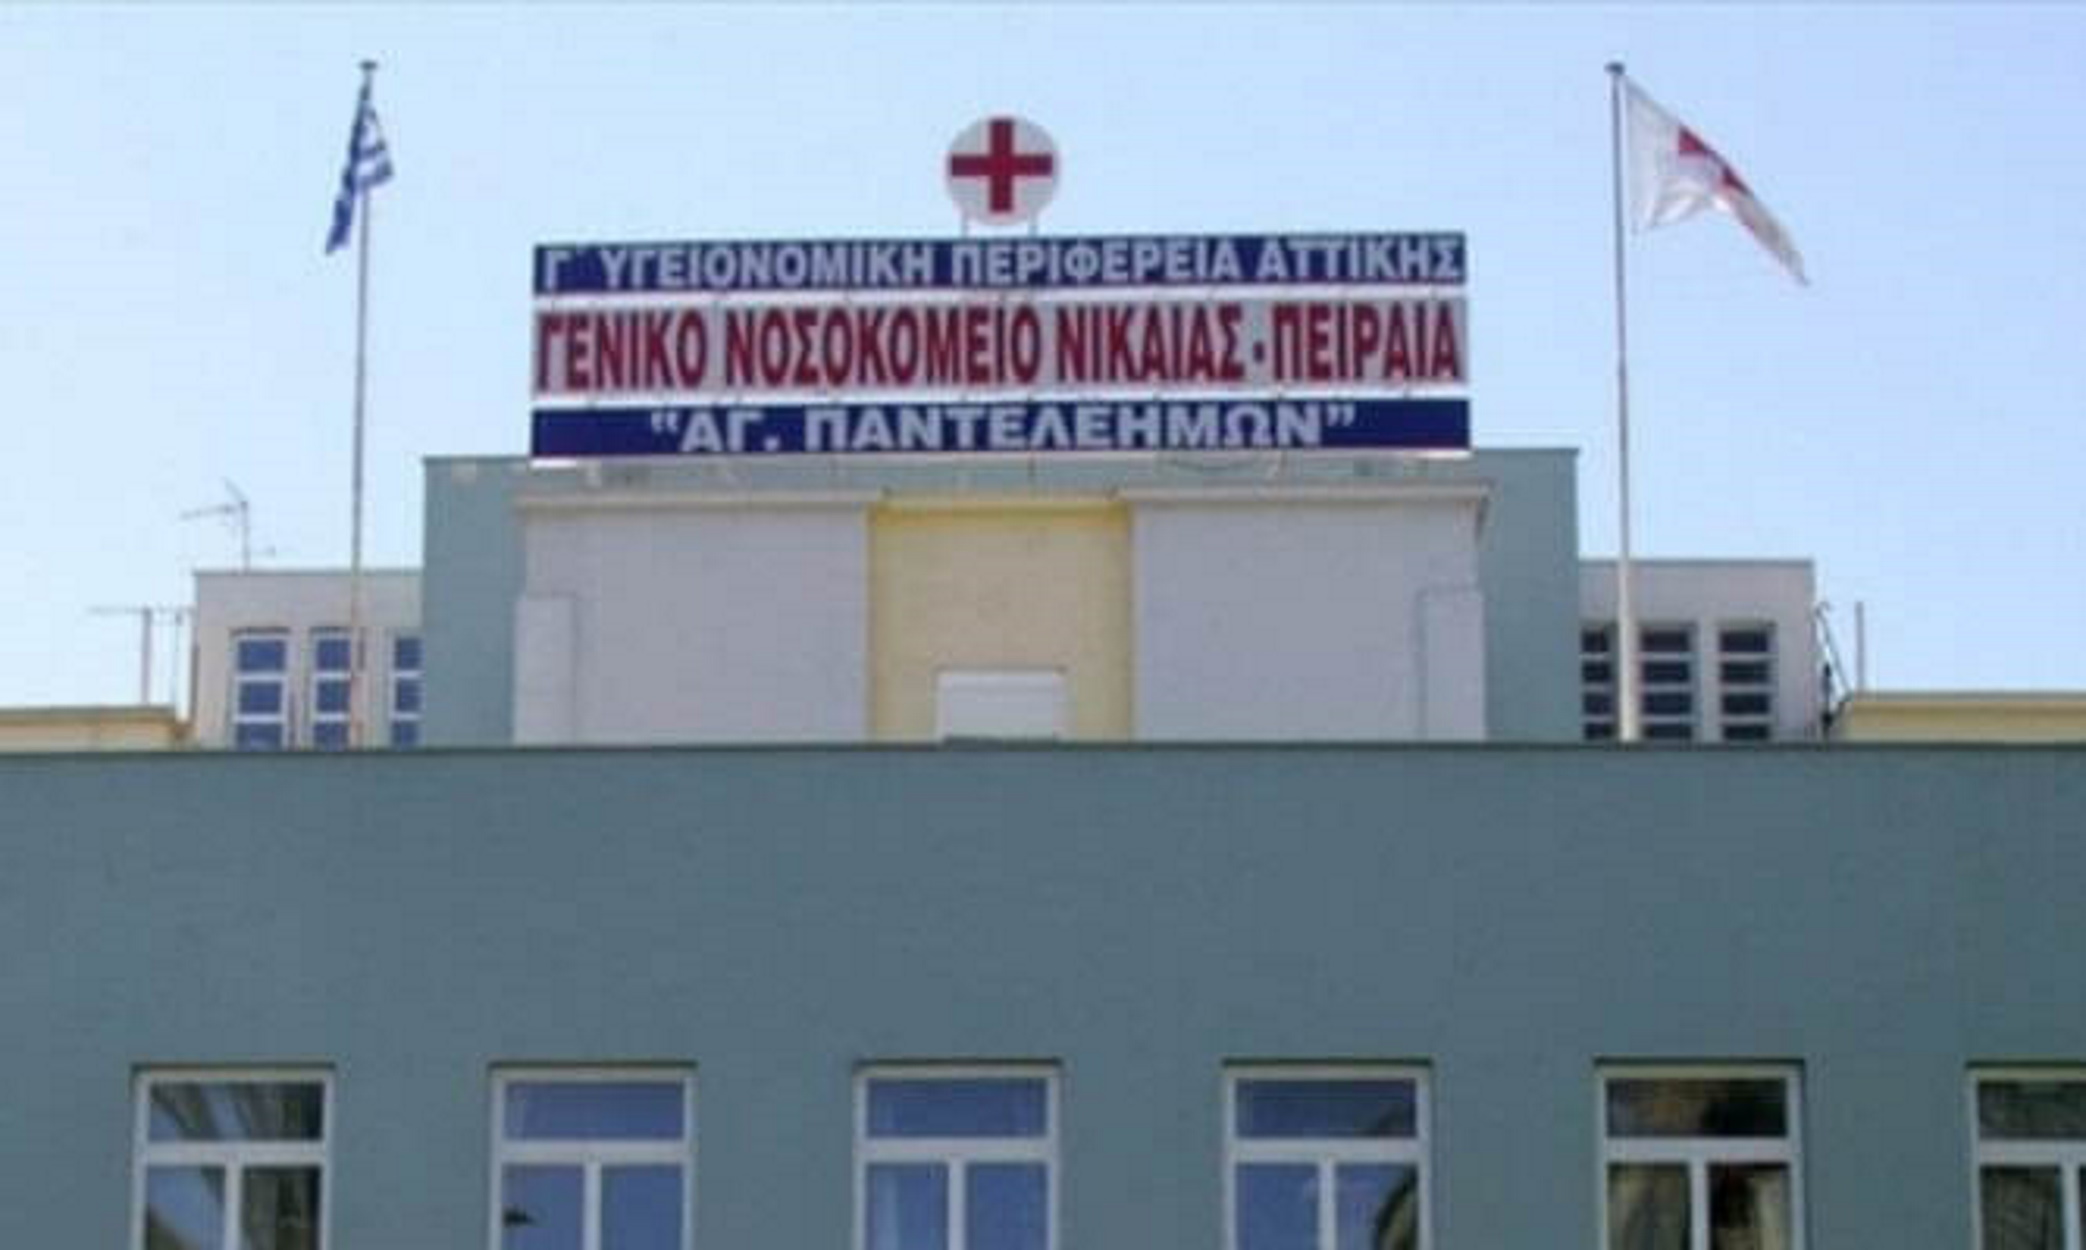 Σφήκες τσιμπούσαν ασθενείς στο νοσοκομείο Νίκαιας καταγγέλλει η ΠΟΕΔΗΝ – «Έκλεισε θάλαμος της παθολογικής»